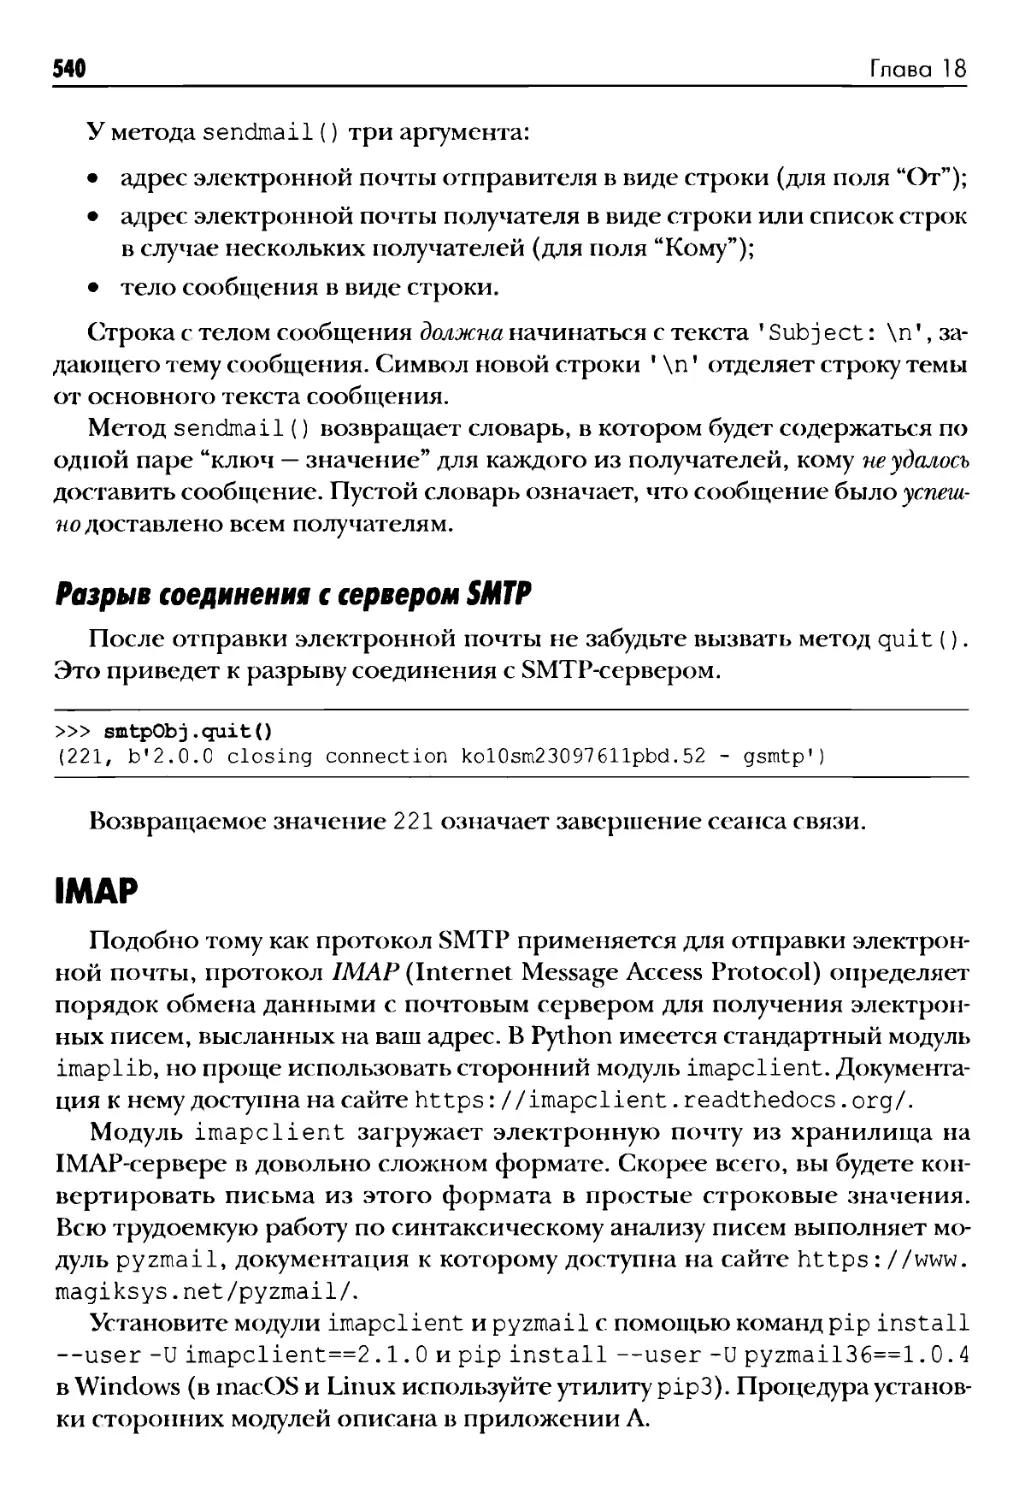 Разрыв соединения с сервером SMTP
IMAP